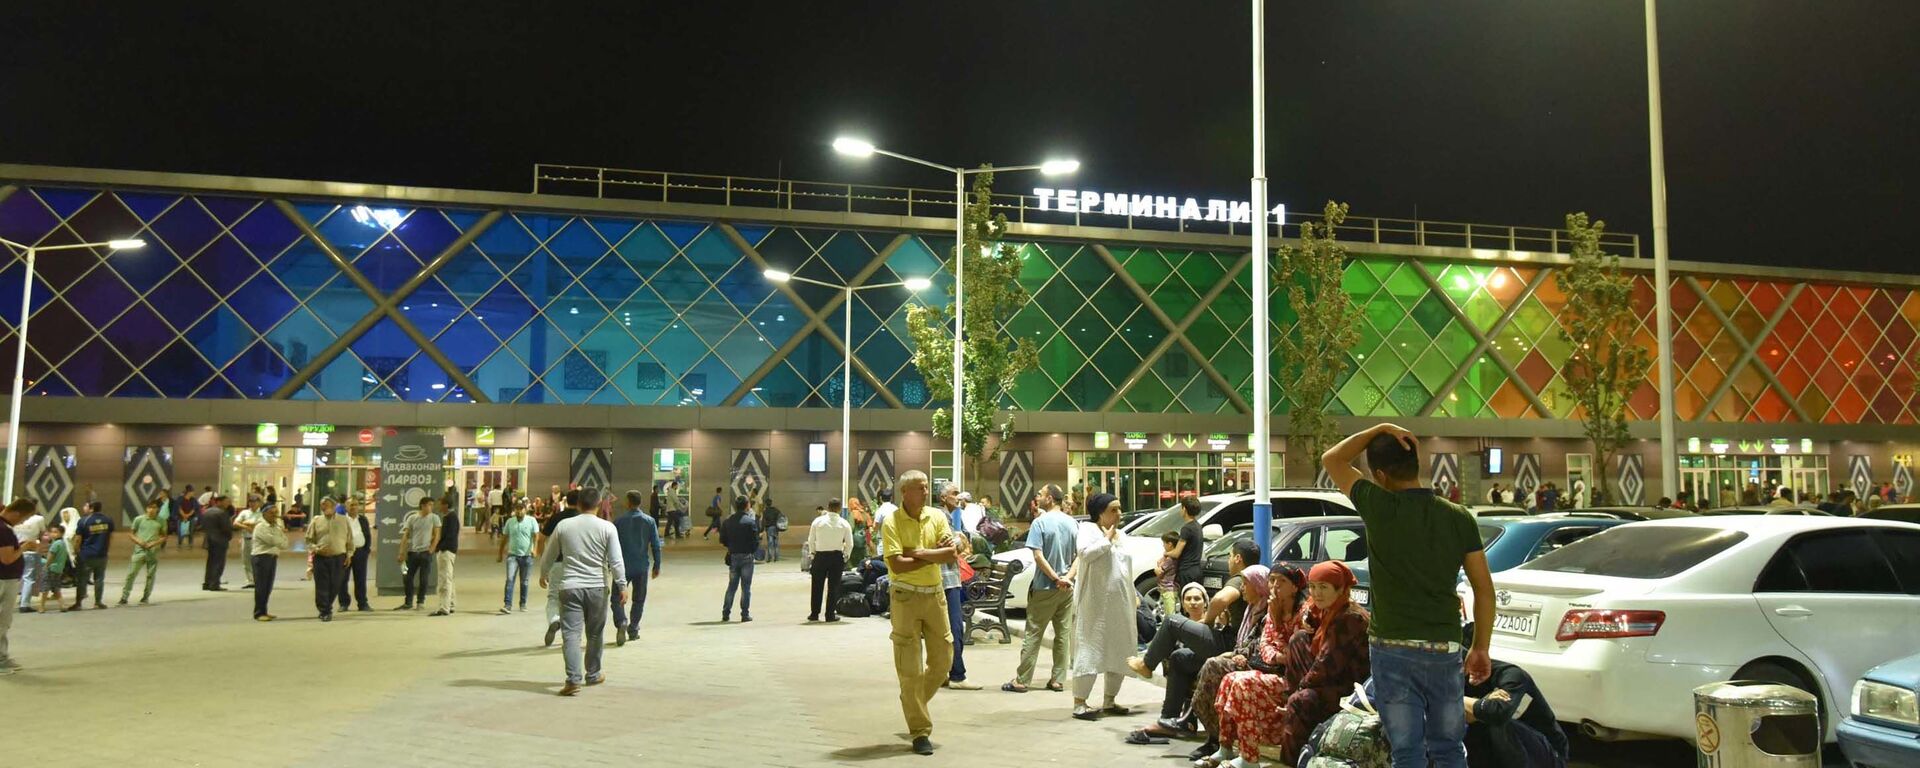 Аэропорт в Душанбе ночью, архивное фото - Sputnik Тоҷикистон, 1920, 27.07.2021